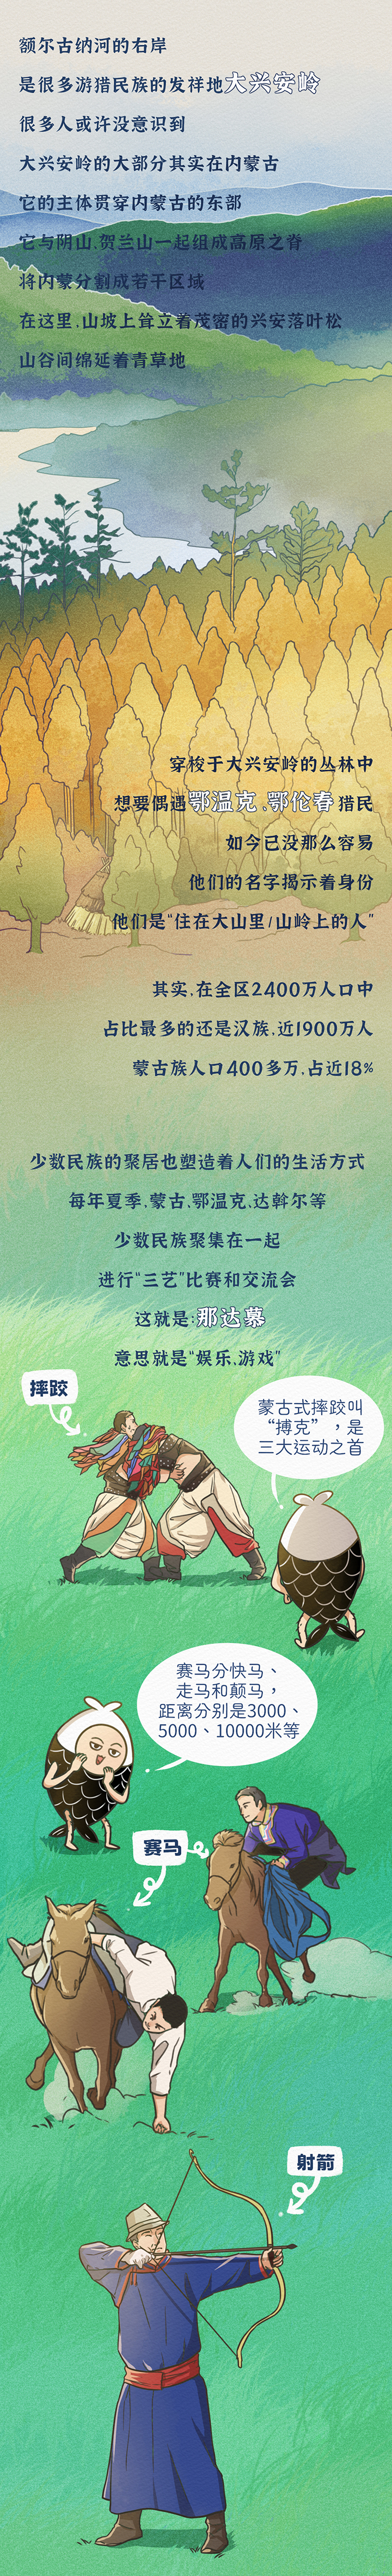 大鱼漫画 | 人人会骑马、处处是草原……你对内蒙古的误解有多深？